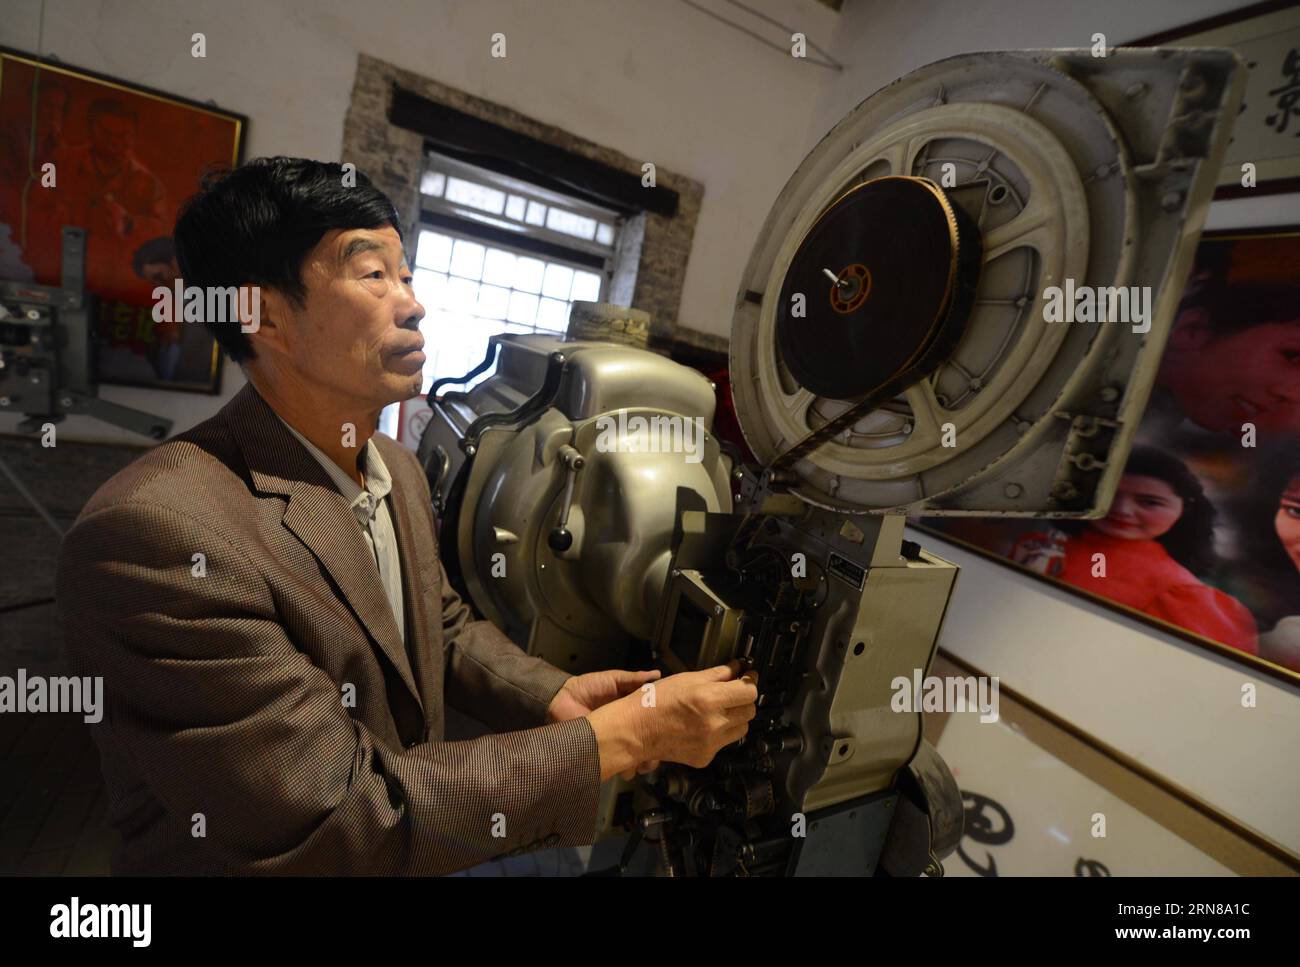 SHIJIAZHUANG, 13 ottobre 2015 -- Wei Shaoxian debugia un vecchio proiettore cinematografico nel suo museo cinematografico nel villaggio di Siliugu della contea di Handan, nella provincia di Hebei, nella Cina settentrionale, 13 ottobre 2015. Cinephile Wei Shaoxian ha raccolto più di 20.000 articoli sul cinema, come filmstrip, poster e dischi, dal 2004 e ha fondato il suo museo privato del cinema nel suo villaggio nel 2015. ) (Zkr) CHINA-SHIJIAZHUANG-FILM MUSEUM(CN) WangxXiao PUBLICATIONxNOTxINxCHN Shijiazhuang 13 ottobre 2015 Wei debug al proiettore Old Film PRESSO il suo Museo del Cinema nel villaggio di Handan County nella provincia di Hebei della Cina settentrionale 13 ottobre 2015 Wei ha collezionato più tha Foto Stock